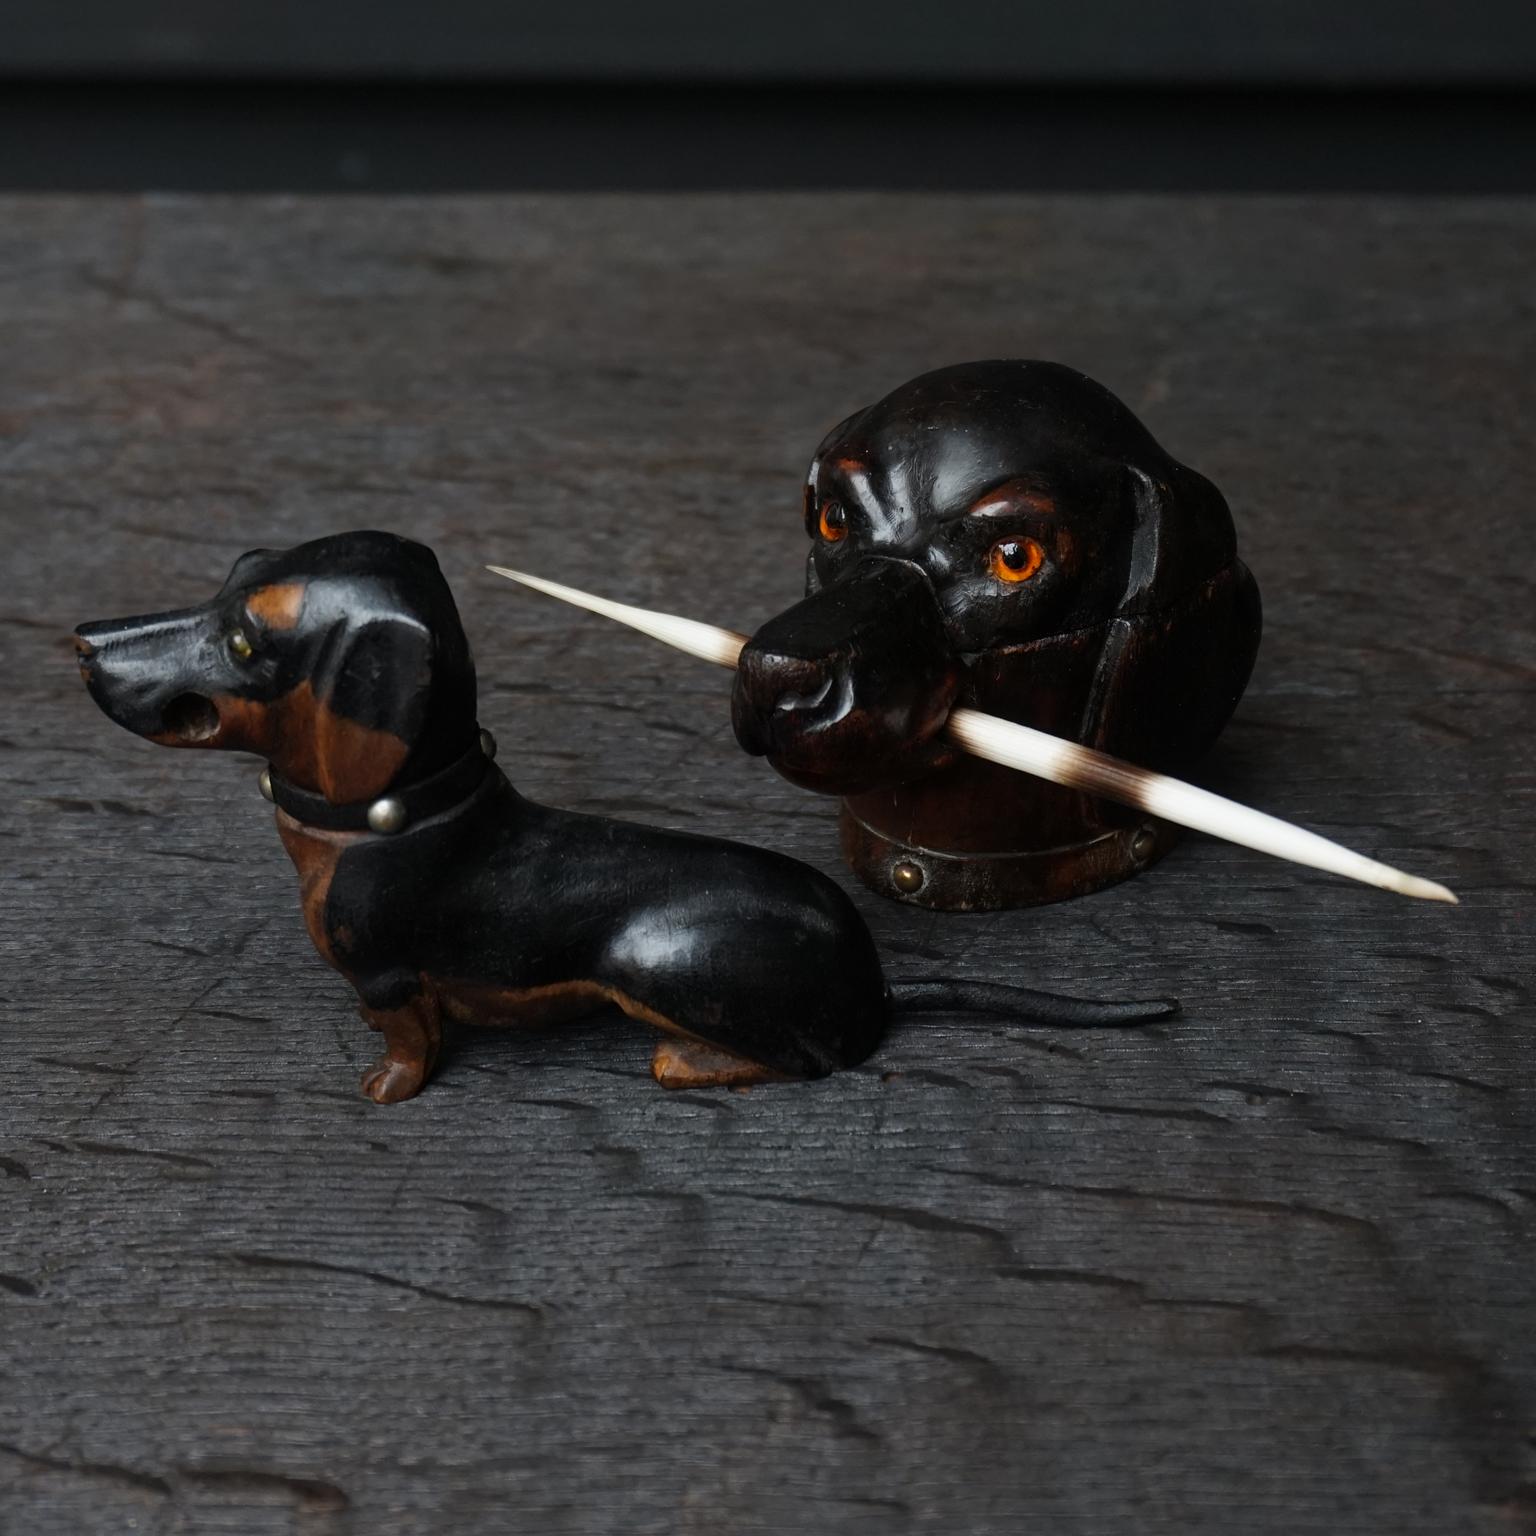 Set von zwei sehr niedlich original 19. Jahrhundert geschnitzt hölzernen viktorianischen Ära wiener Hunde oder Dackel Tintenfässer.

Das größere Exemplar, ein Dackelkopf, hat einen Klappdeckel, der sich öffnen lässt, um das kleine Glastintenfass im